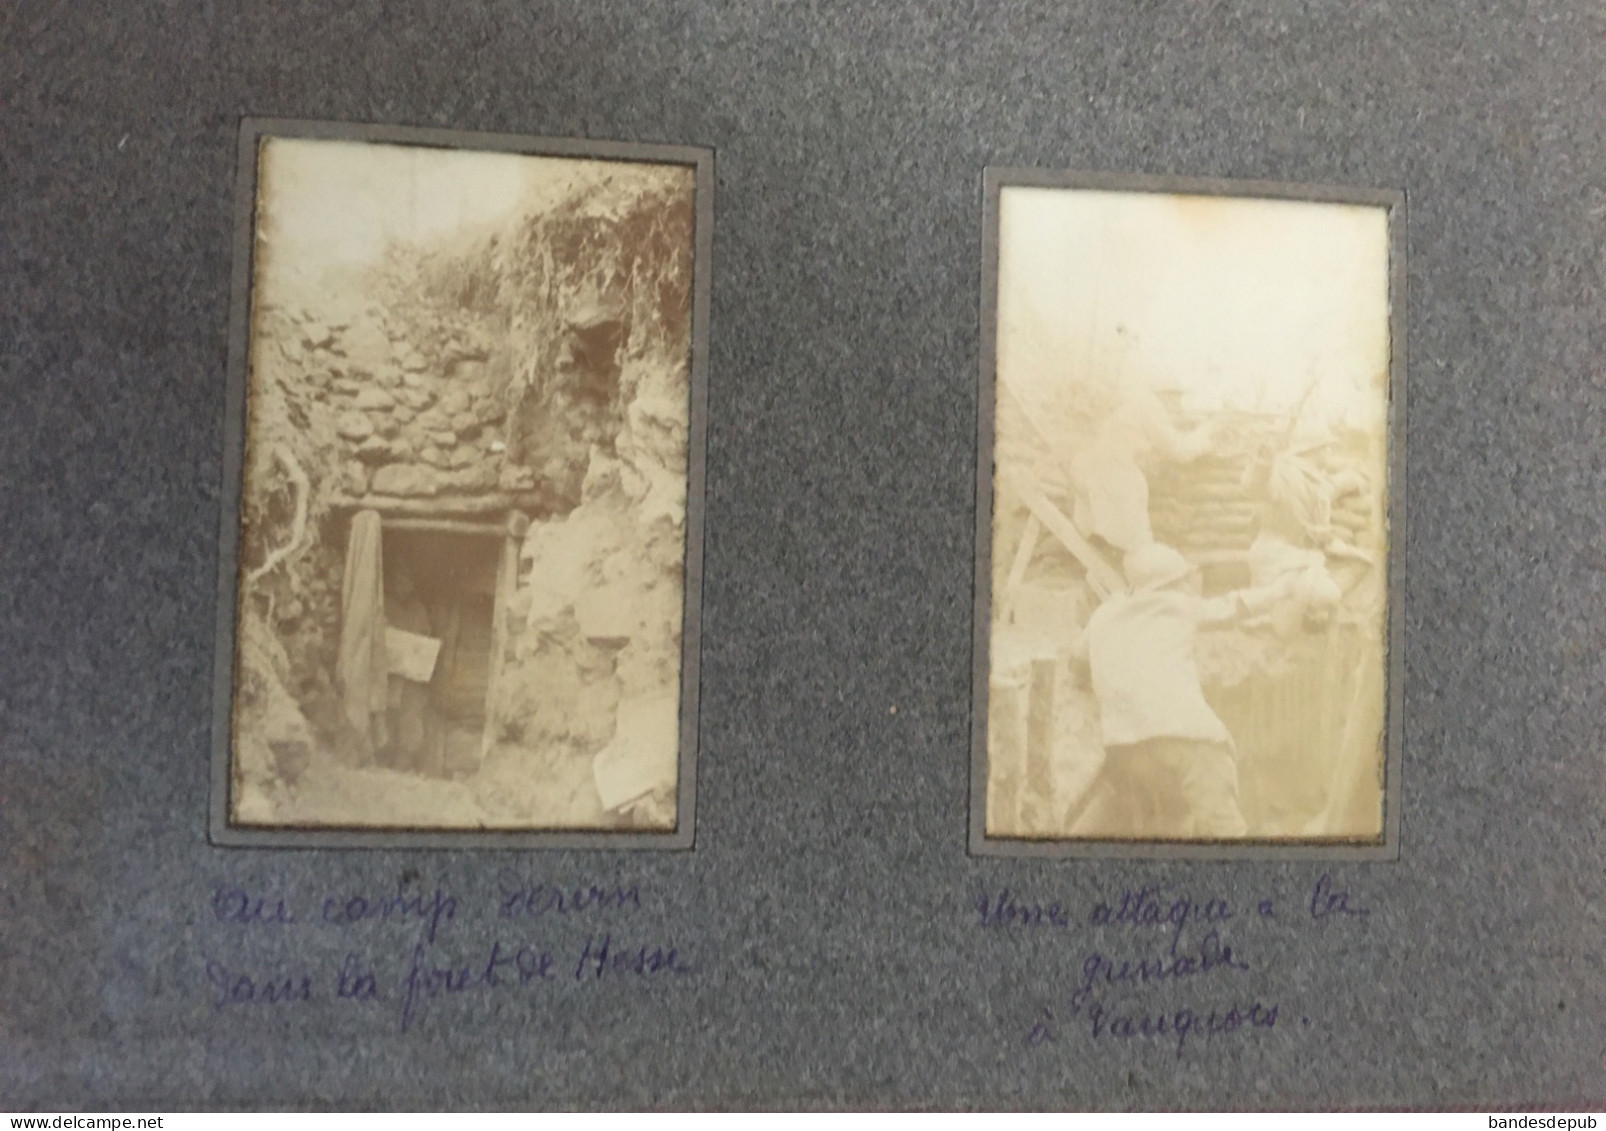 WW1 1918 Meuse album photos kodak Gallerand souvenirs guerre 14 Souilly Clermont Vauquois Chattancourt vie tranchée